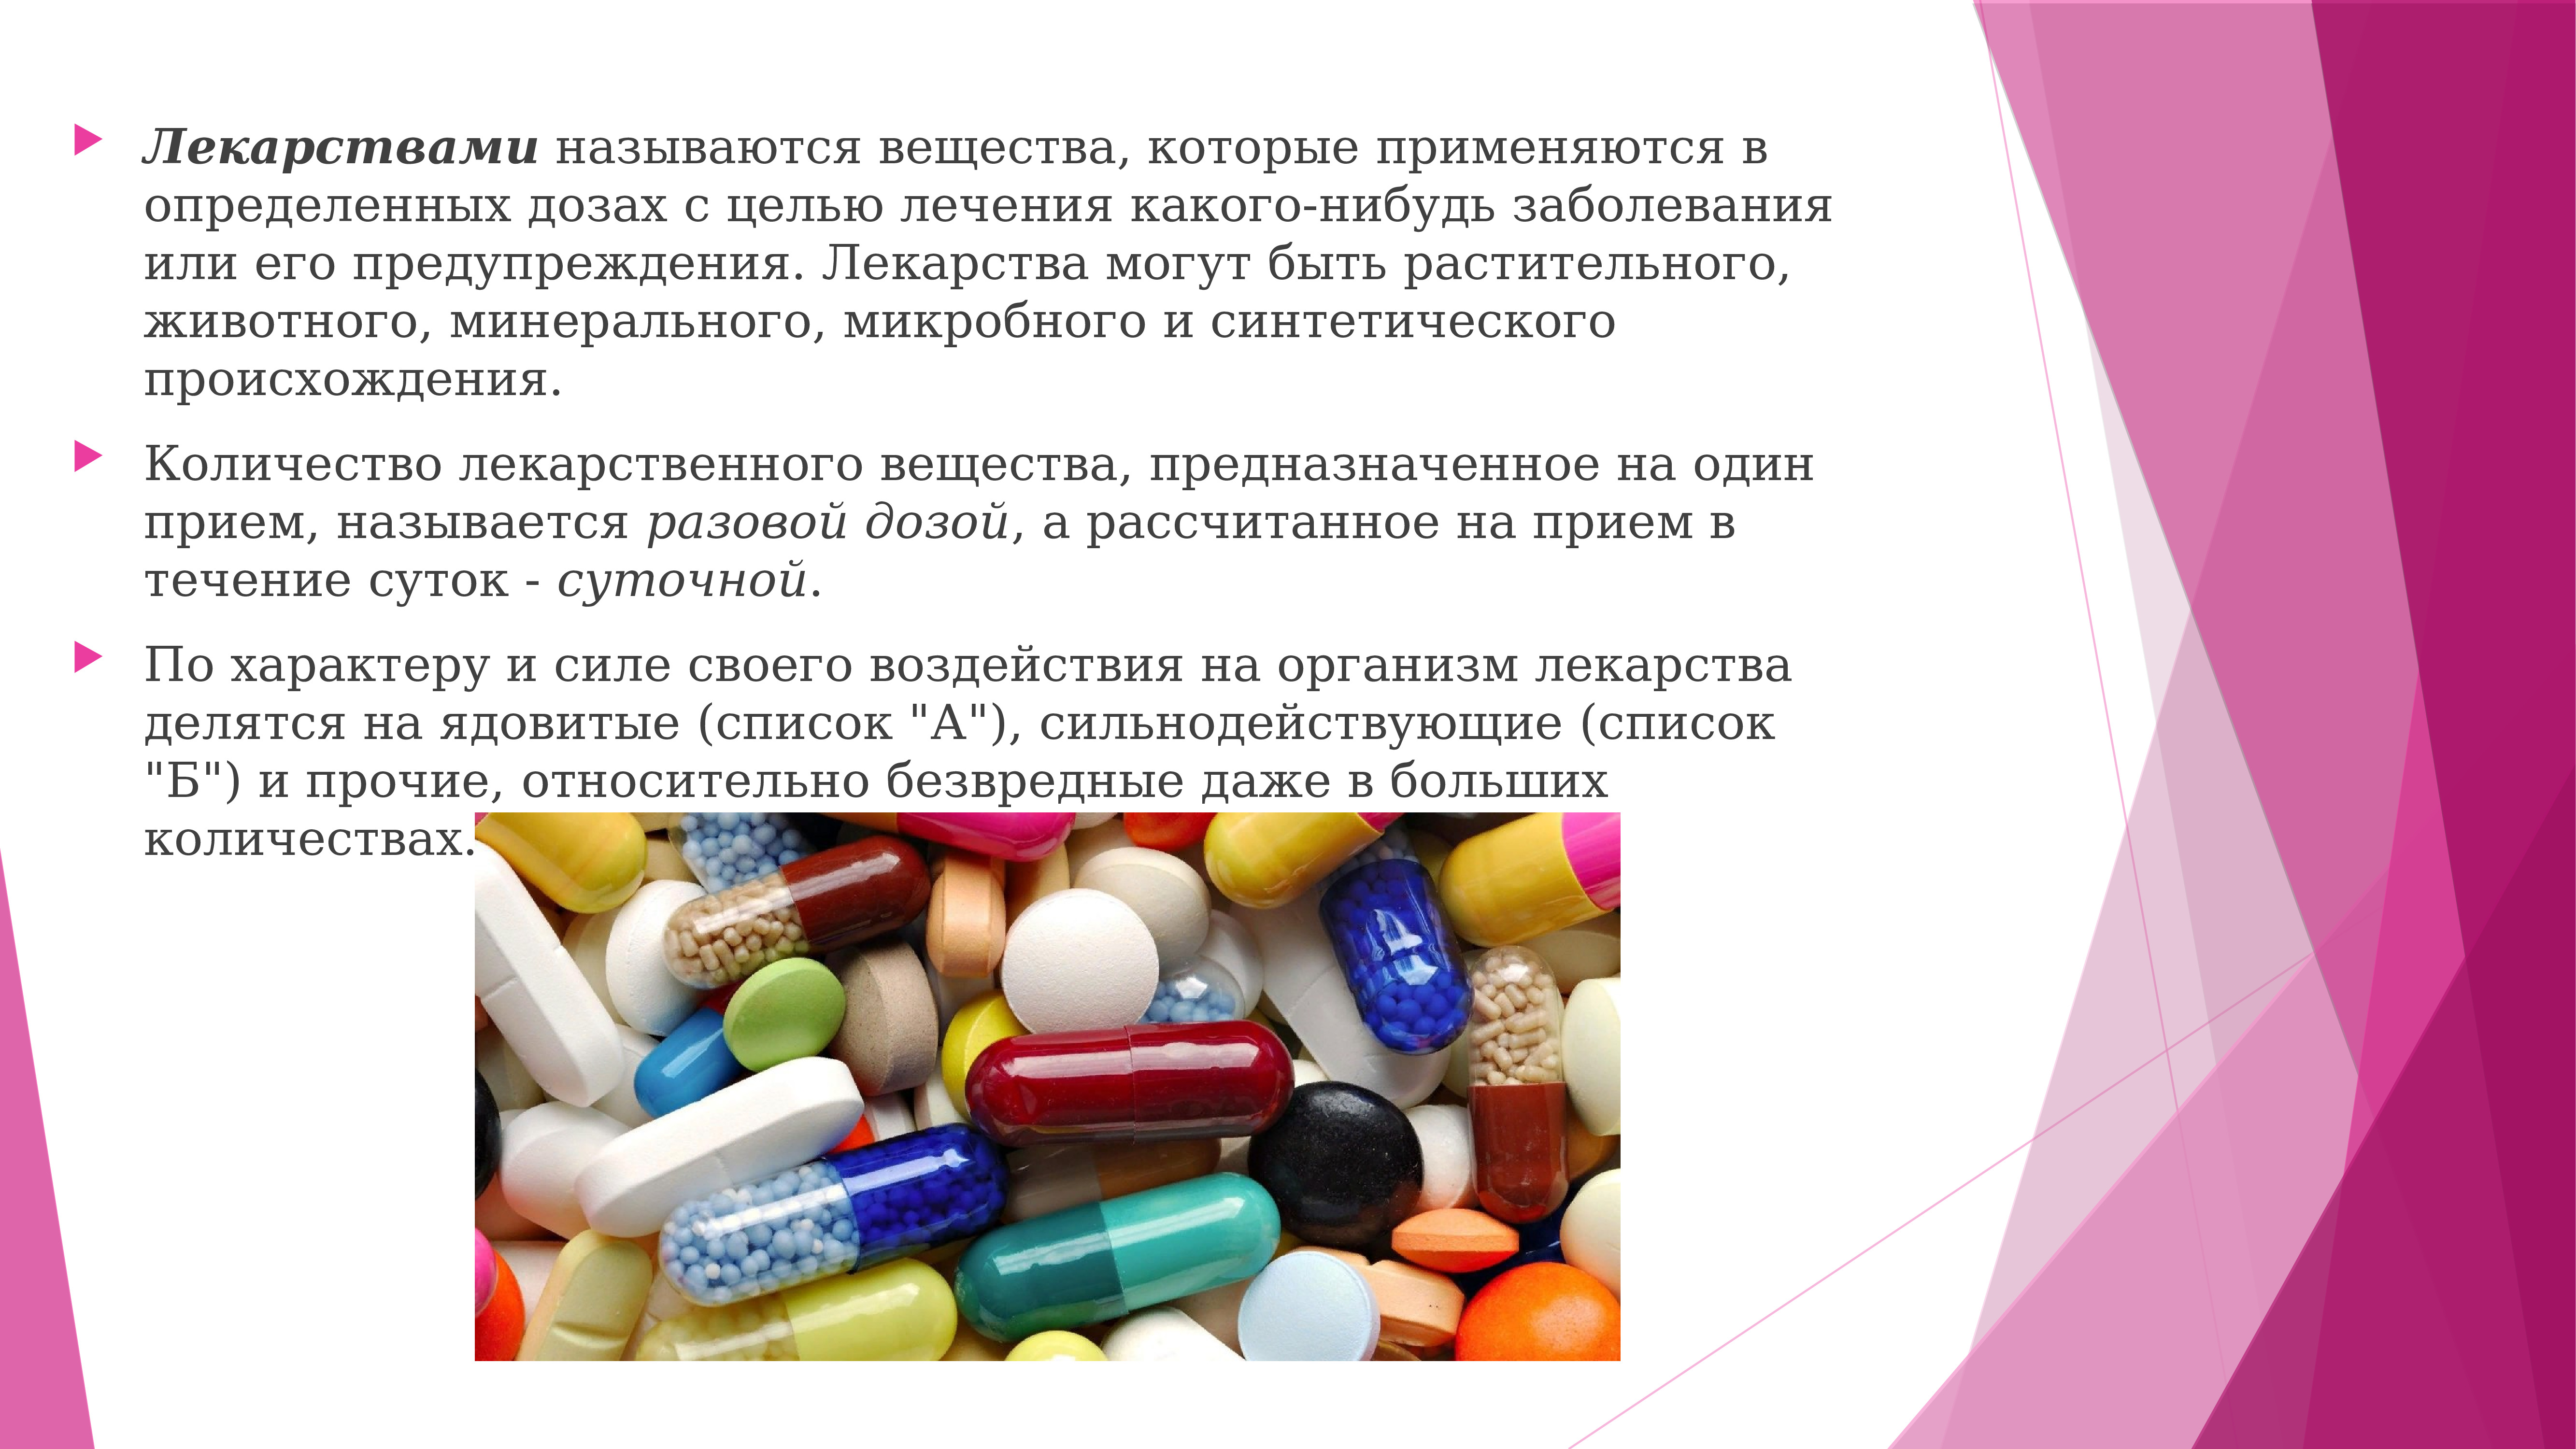 Лекарства и их применение. Лекарственное вещество это. Слайд с лекарственными препаратами. Применение лекарственных веществ. Назначение лекарственных средств.